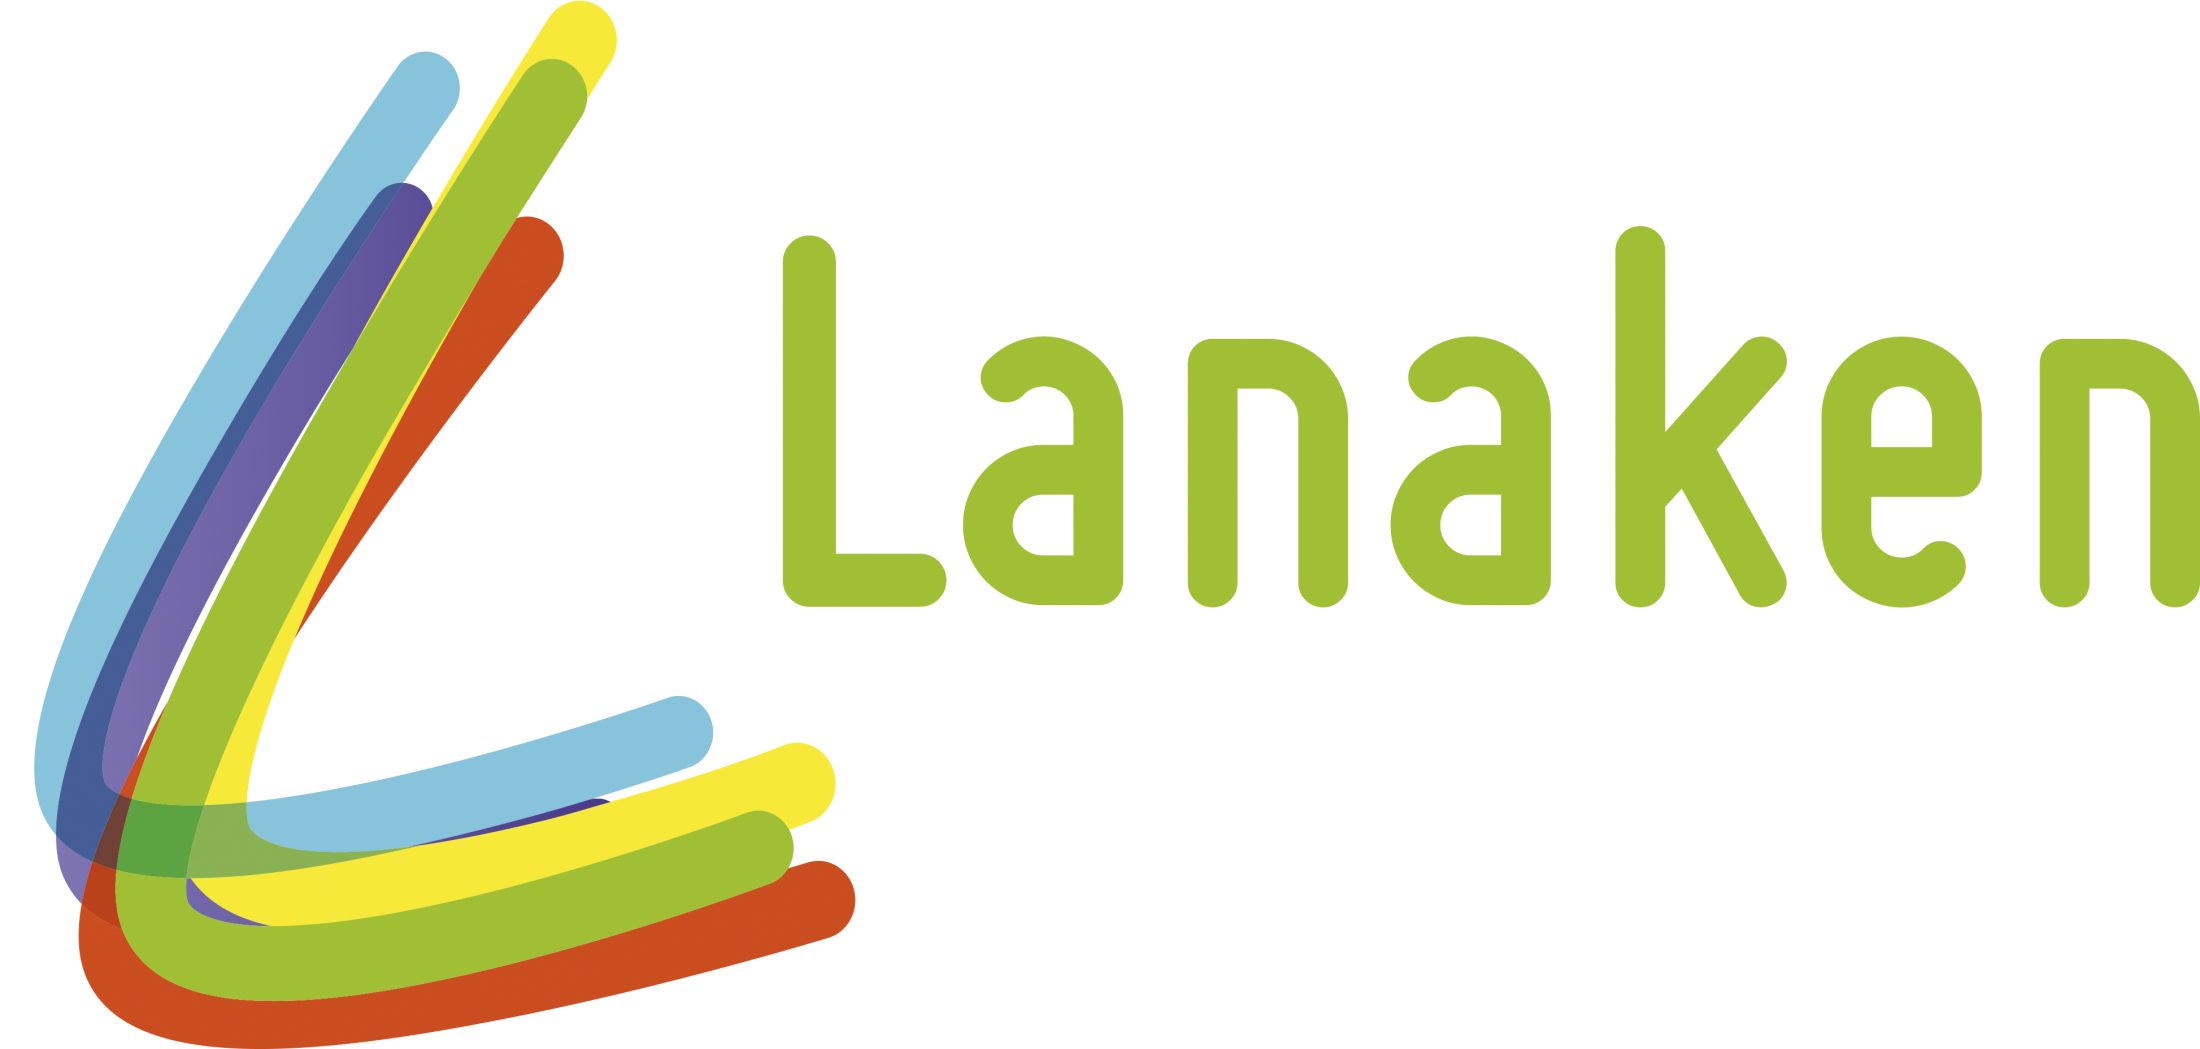 Logo Lanaken